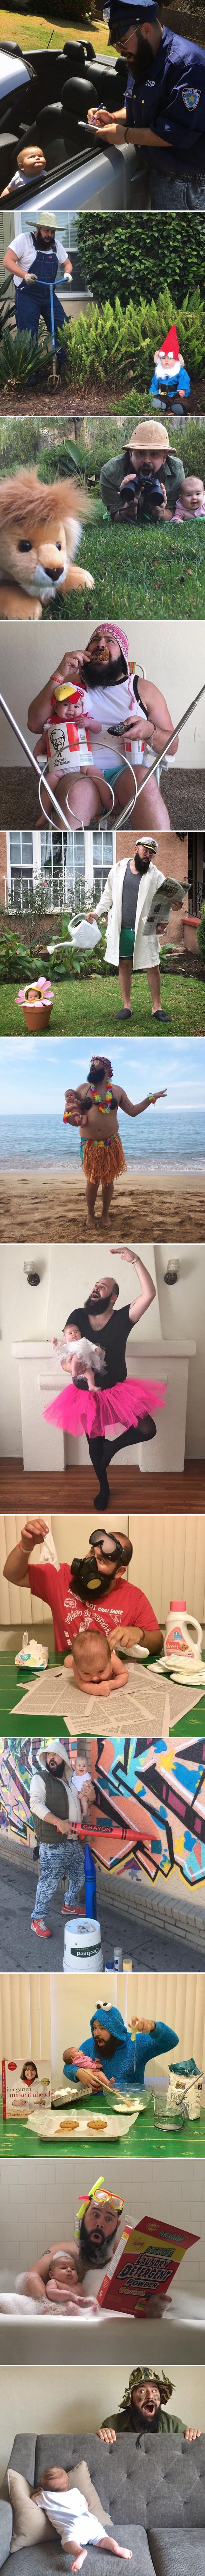 Ovaj ponosni tata je oduševio svijet urnebesnim fotkama koje je napravio sa svojom bebom